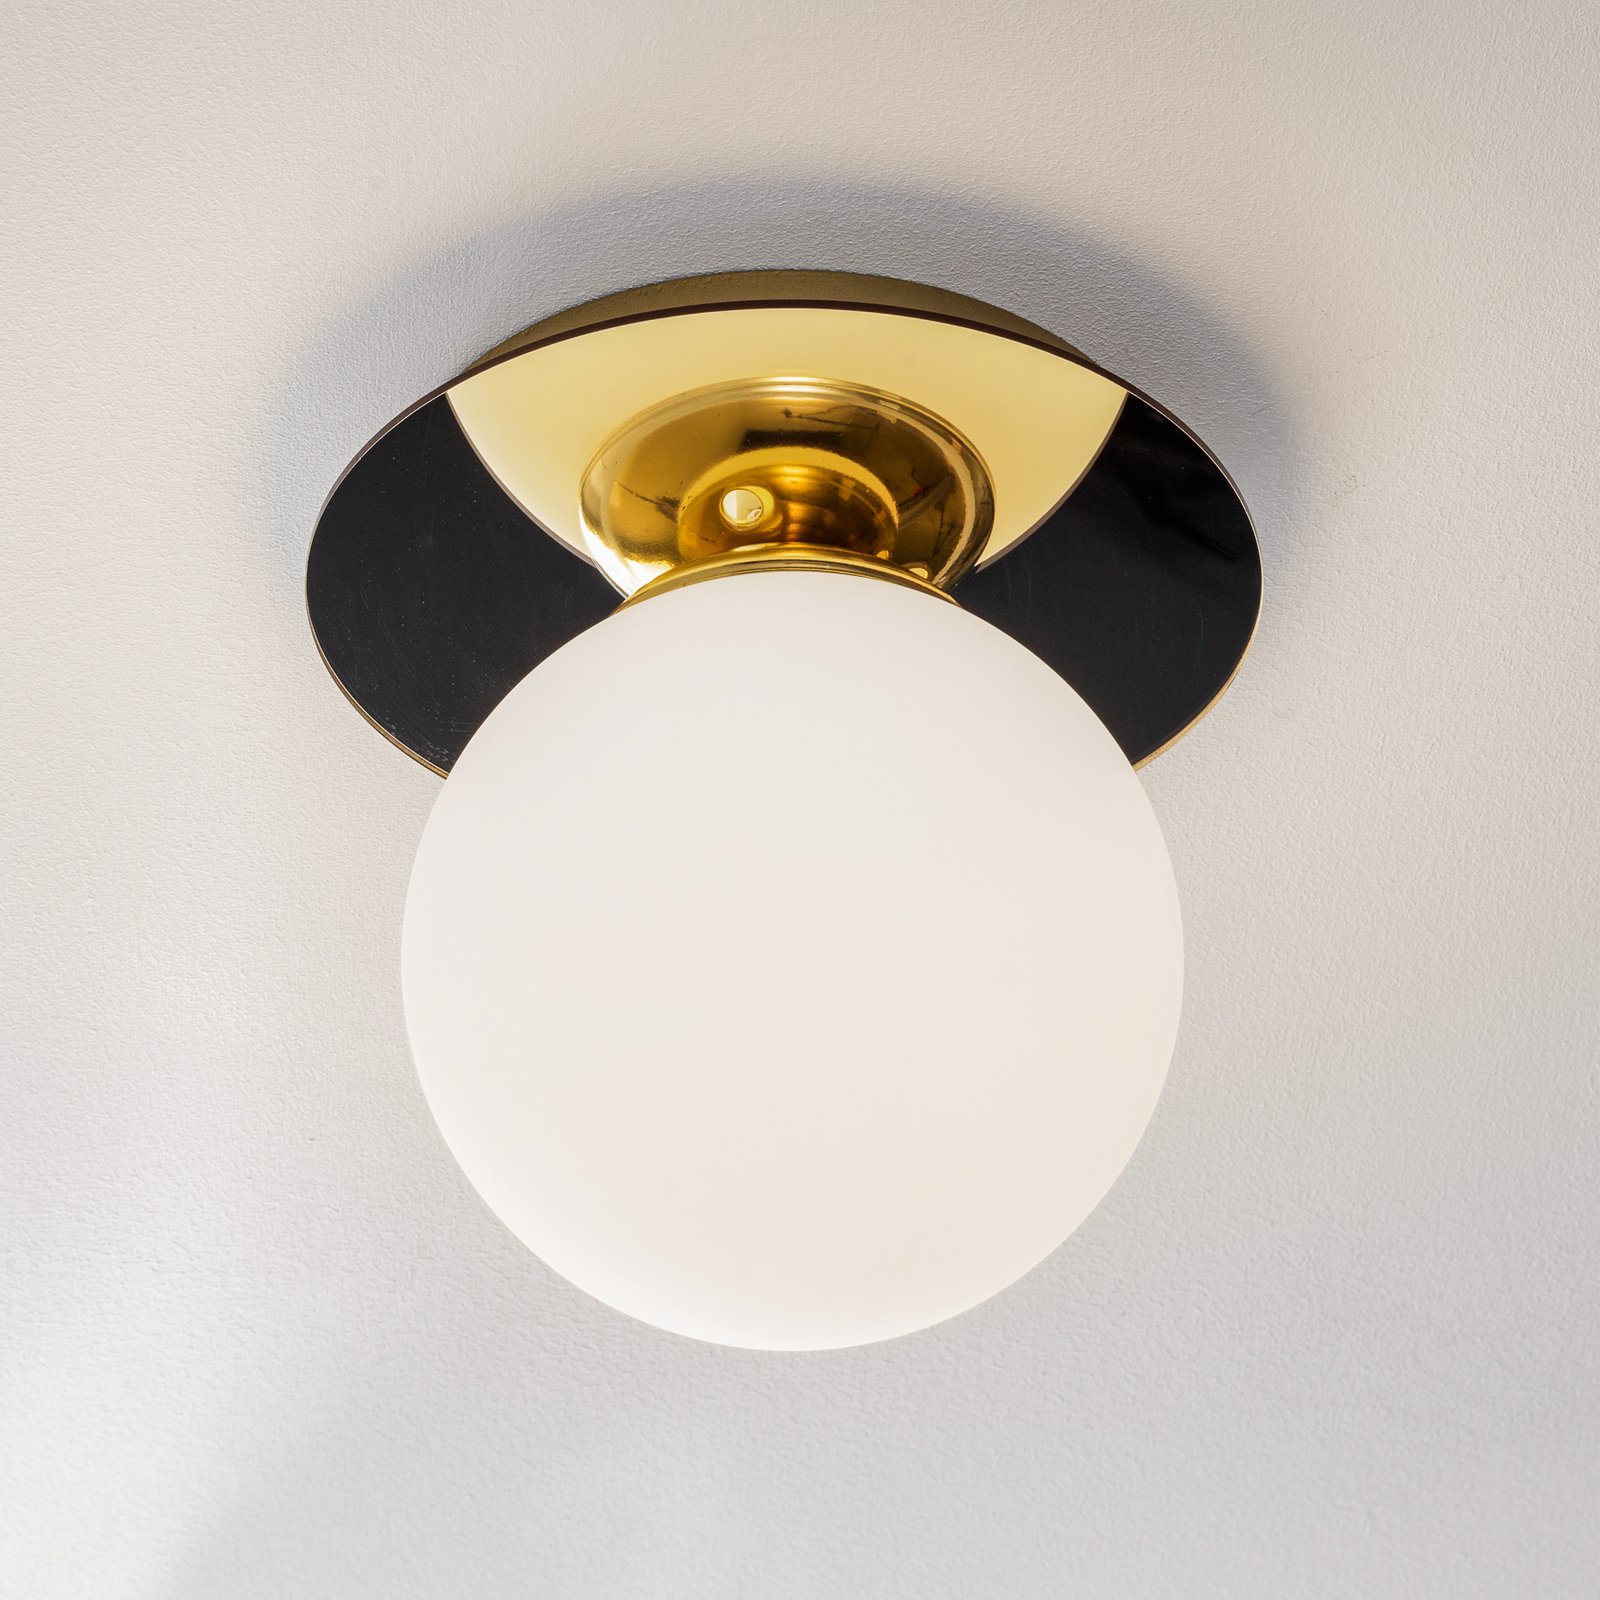 Plato ceiling light, one-bulb, Ø 25 cm